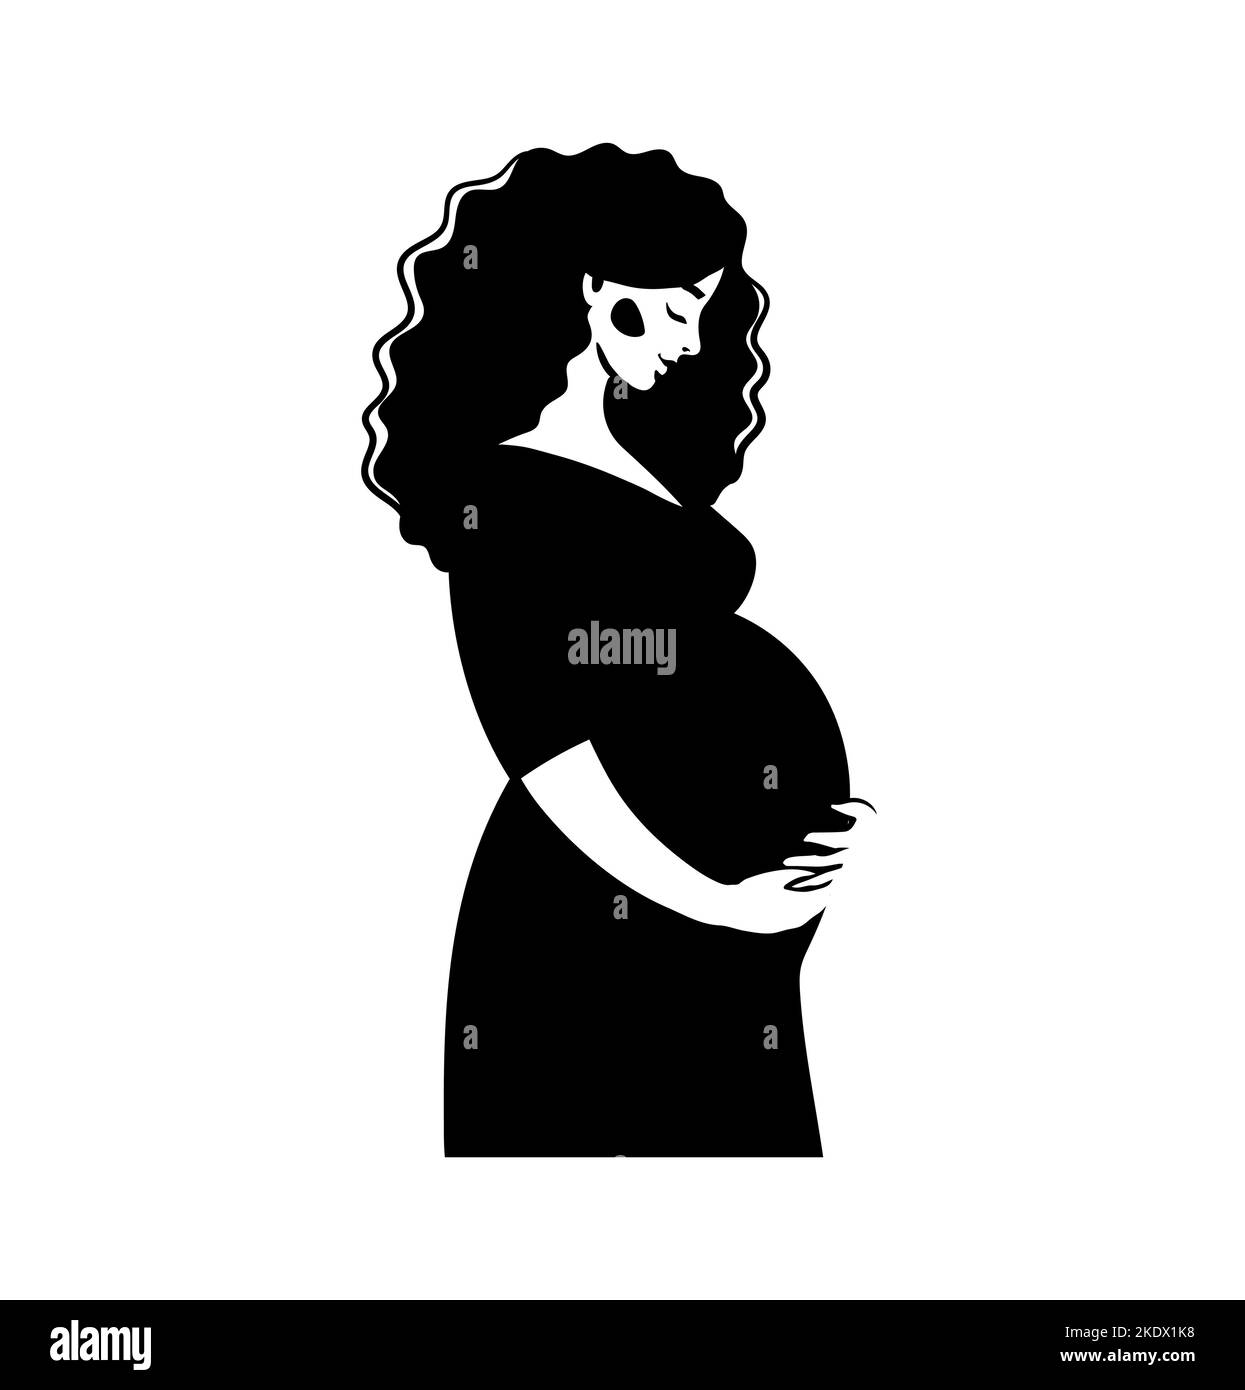 Silhouette d'une femme enceinte, illustration en noir et blanc. Vecteur isolé sur une conception plate blanche pour couper sur un traceur Illustration de Vecteur